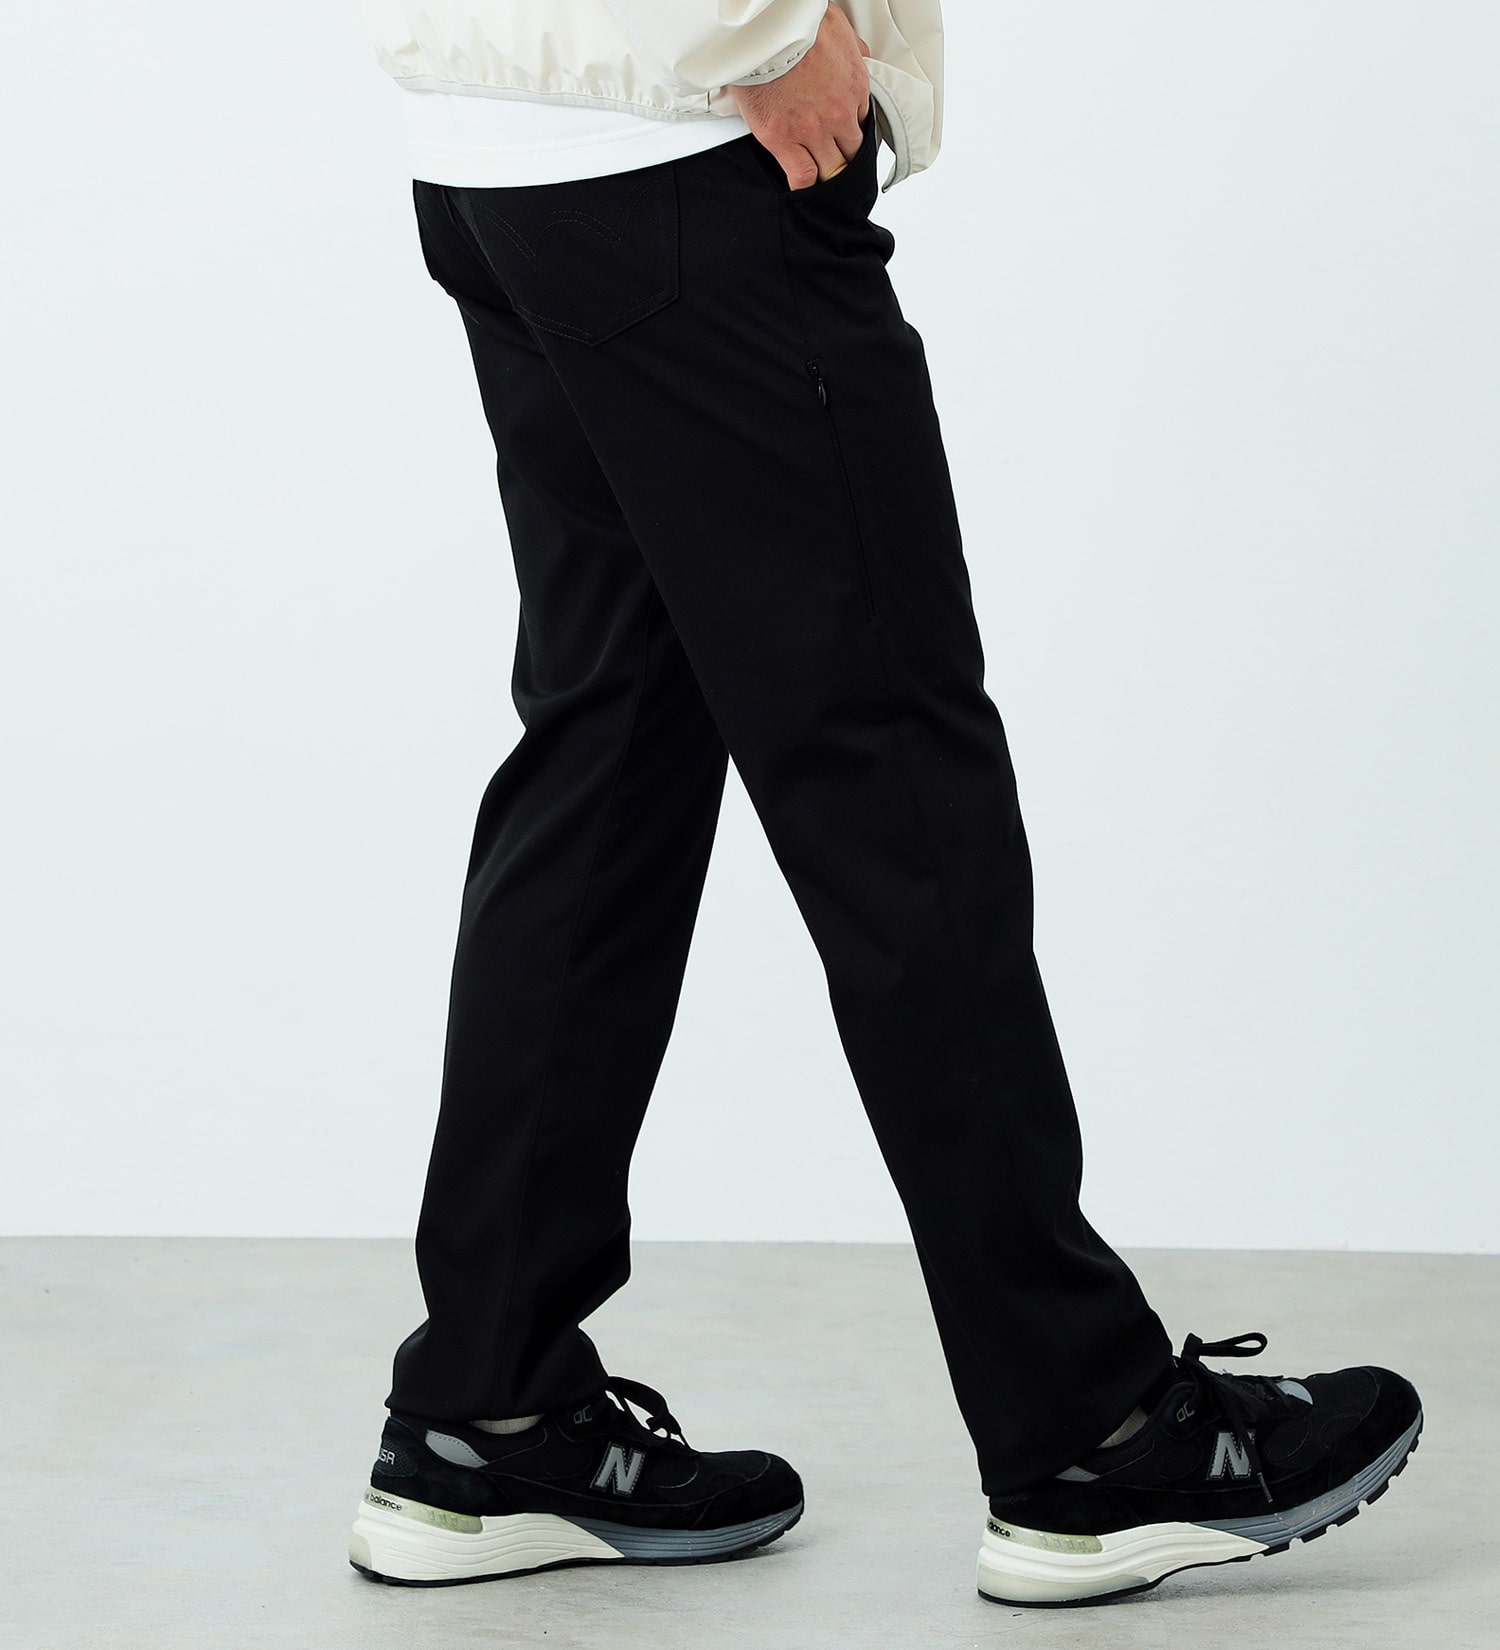 EDWIN(エドウイン)のタビデニ ストレートパンツ 軽量 撥水 ストレッチ 旅行用パンツ【メンズ】|パンツ/パンツ/メンズ|ブラック